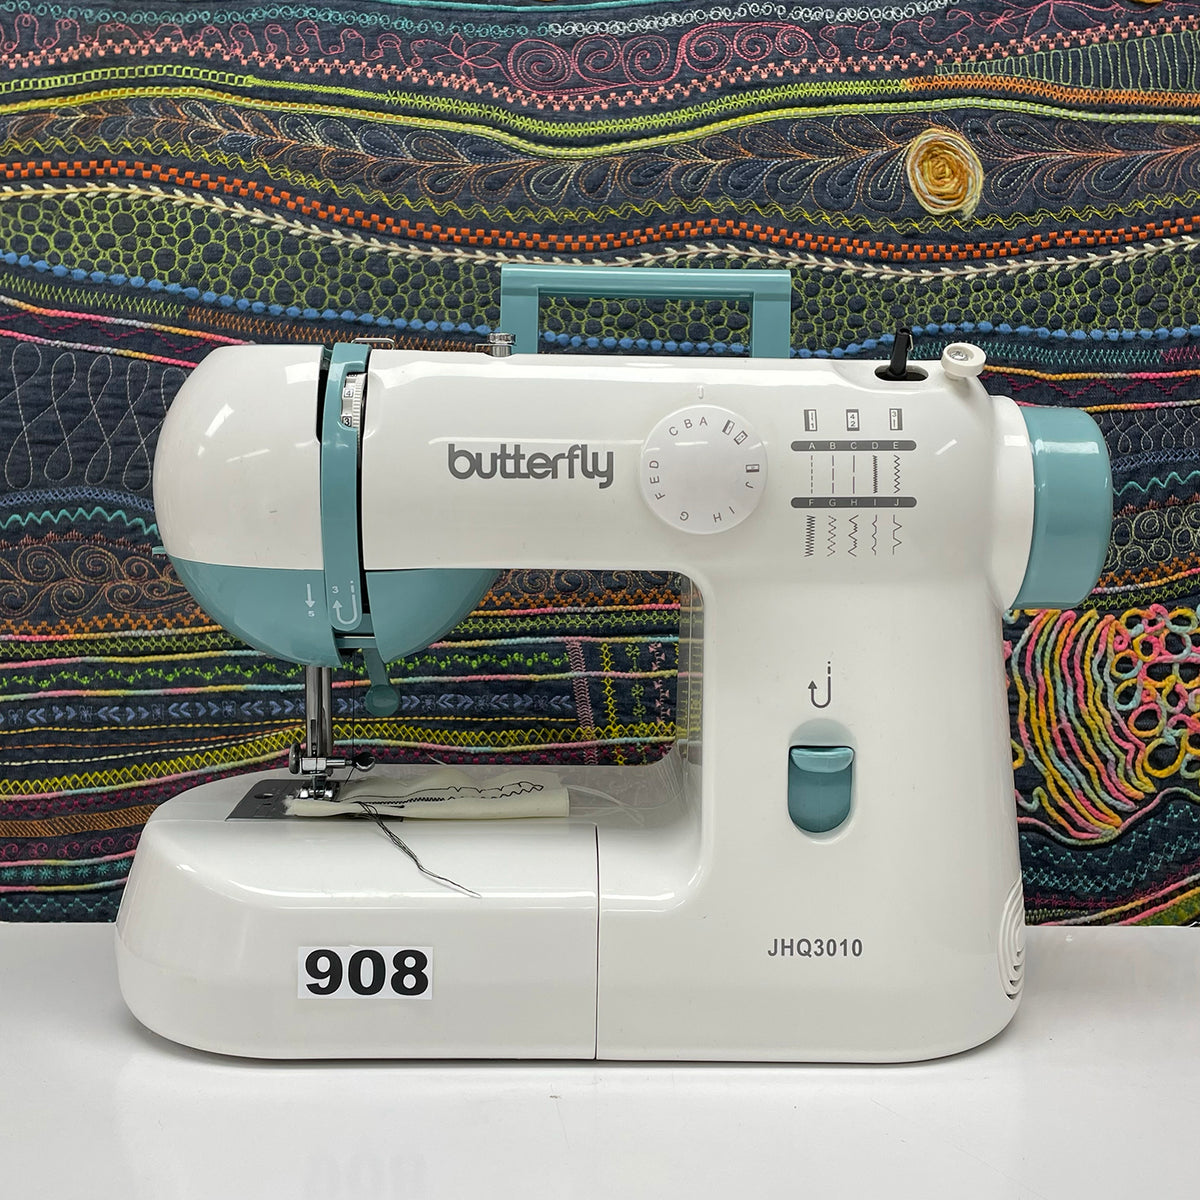 Máquina de coser Butterfly JHQ3010 (Segunda Selección N908)